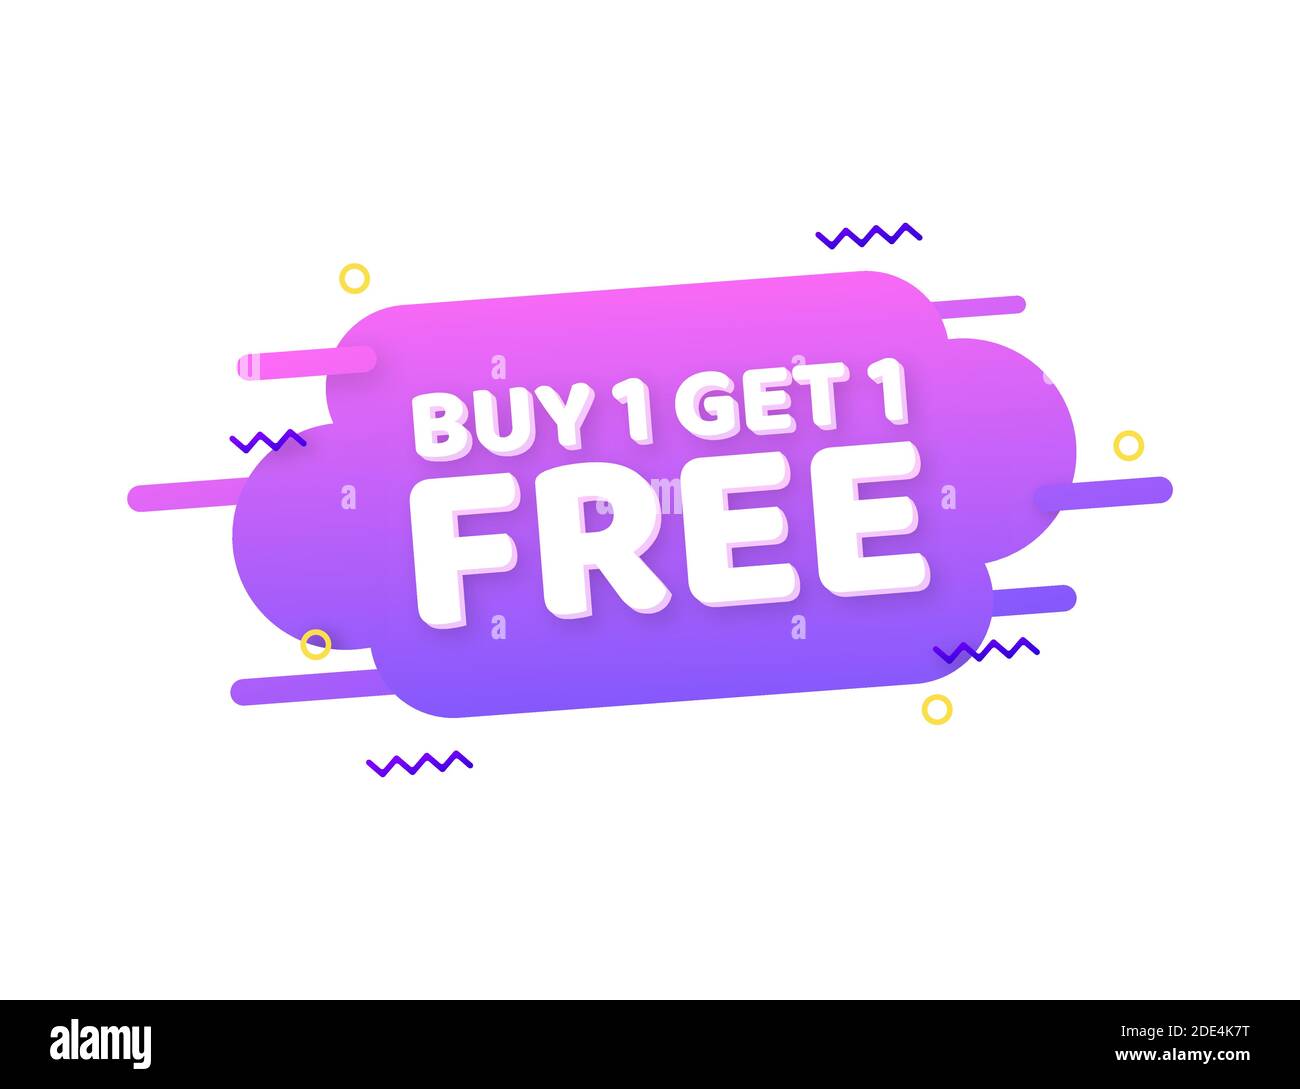 Tag 1 dollar deals Royalty Free Vector Image - VectorStock